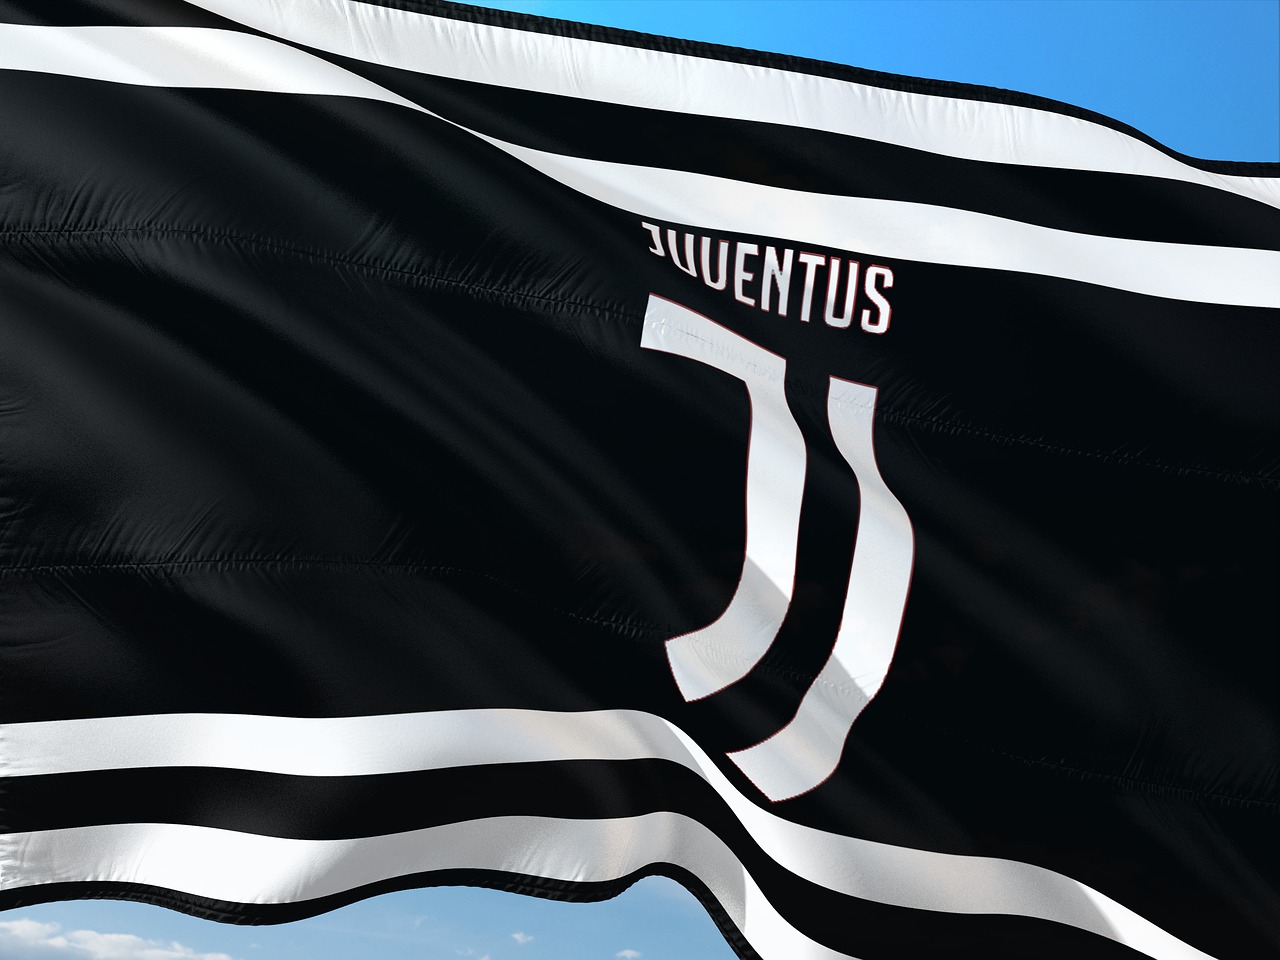 Nuova maglia Juventus: basta con le righe